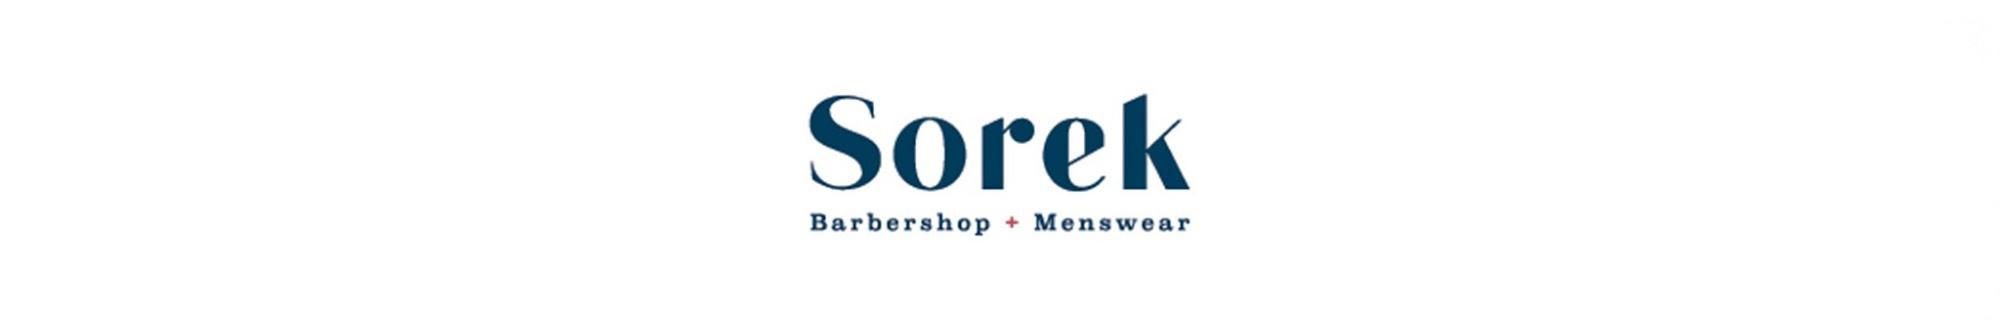 Sorek Barbershop and Menswear 